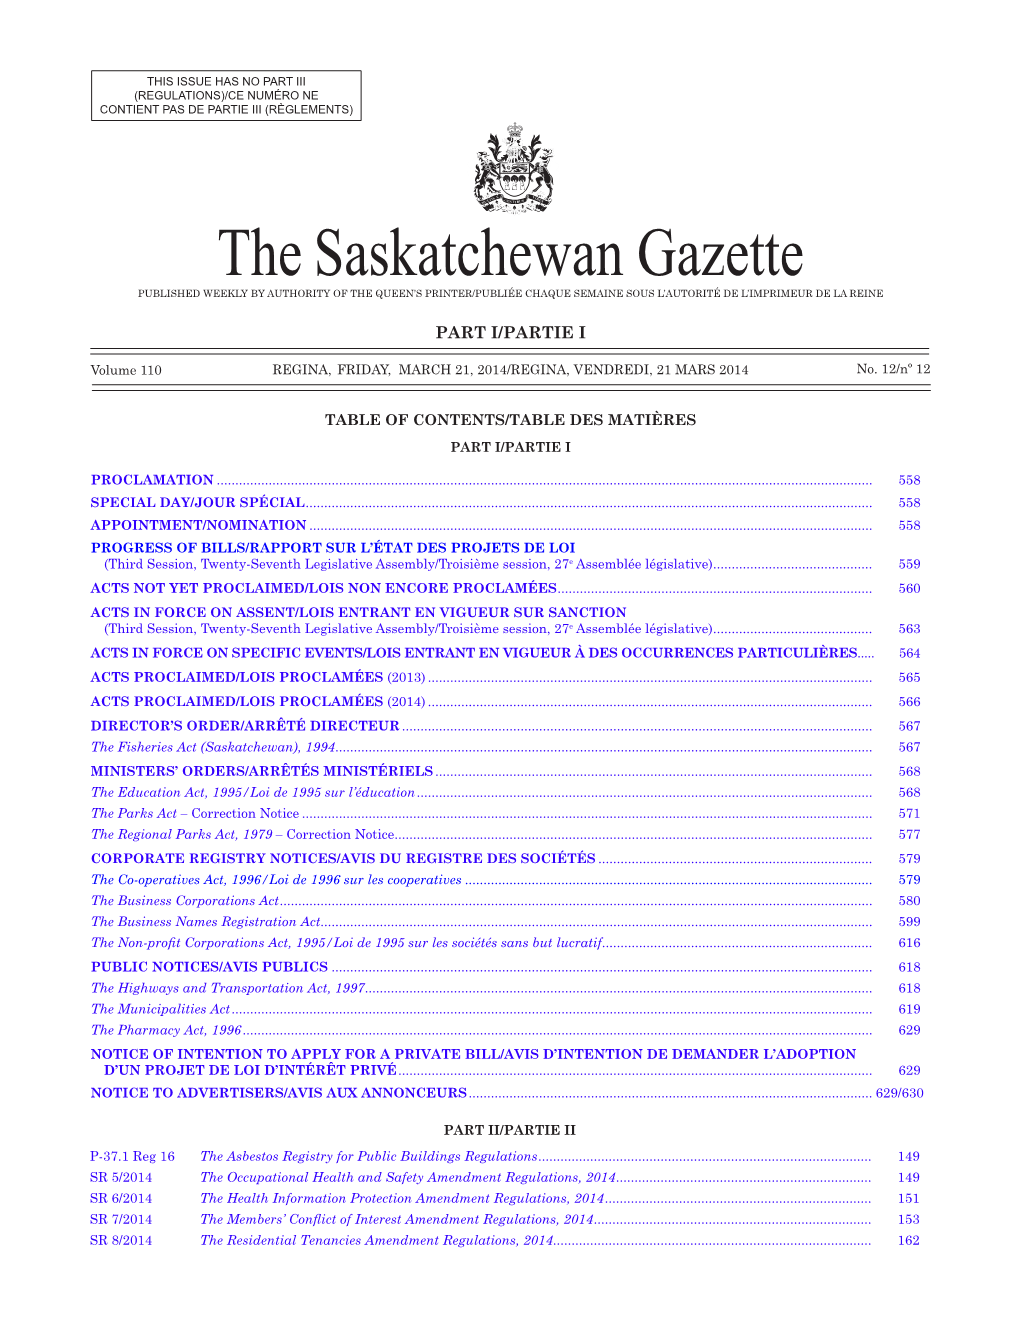 The Saskatchewan Gazette, March 21, 2014 557